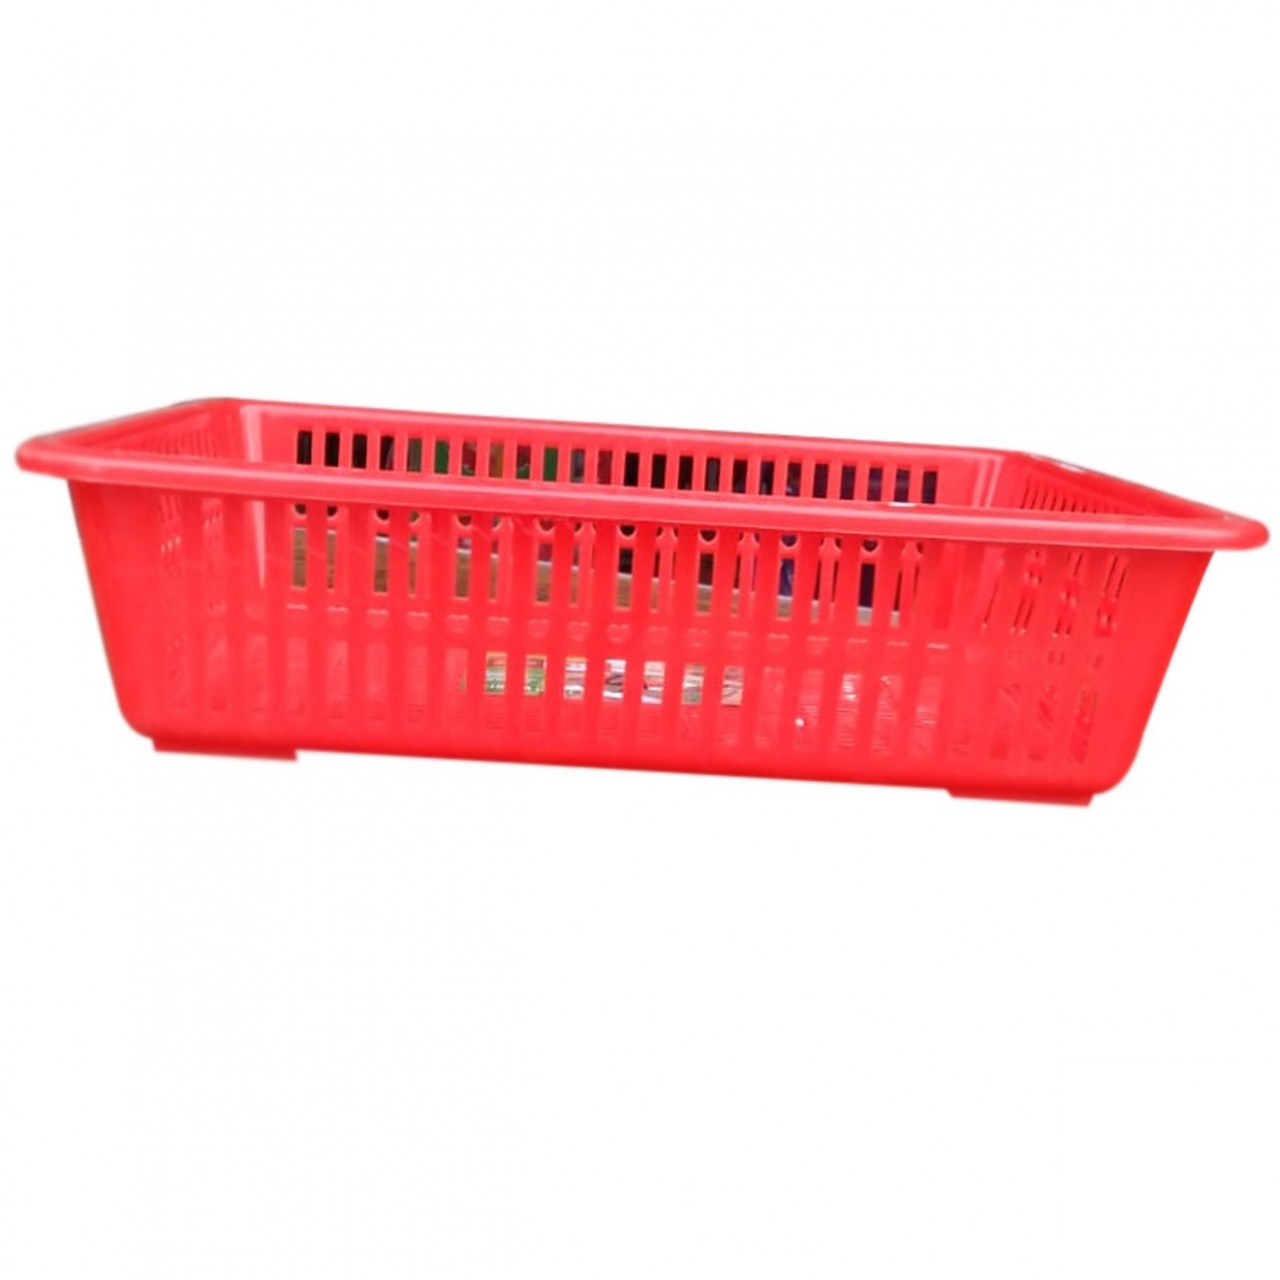 Premium Plastic Basket For Vegetables & Fruits